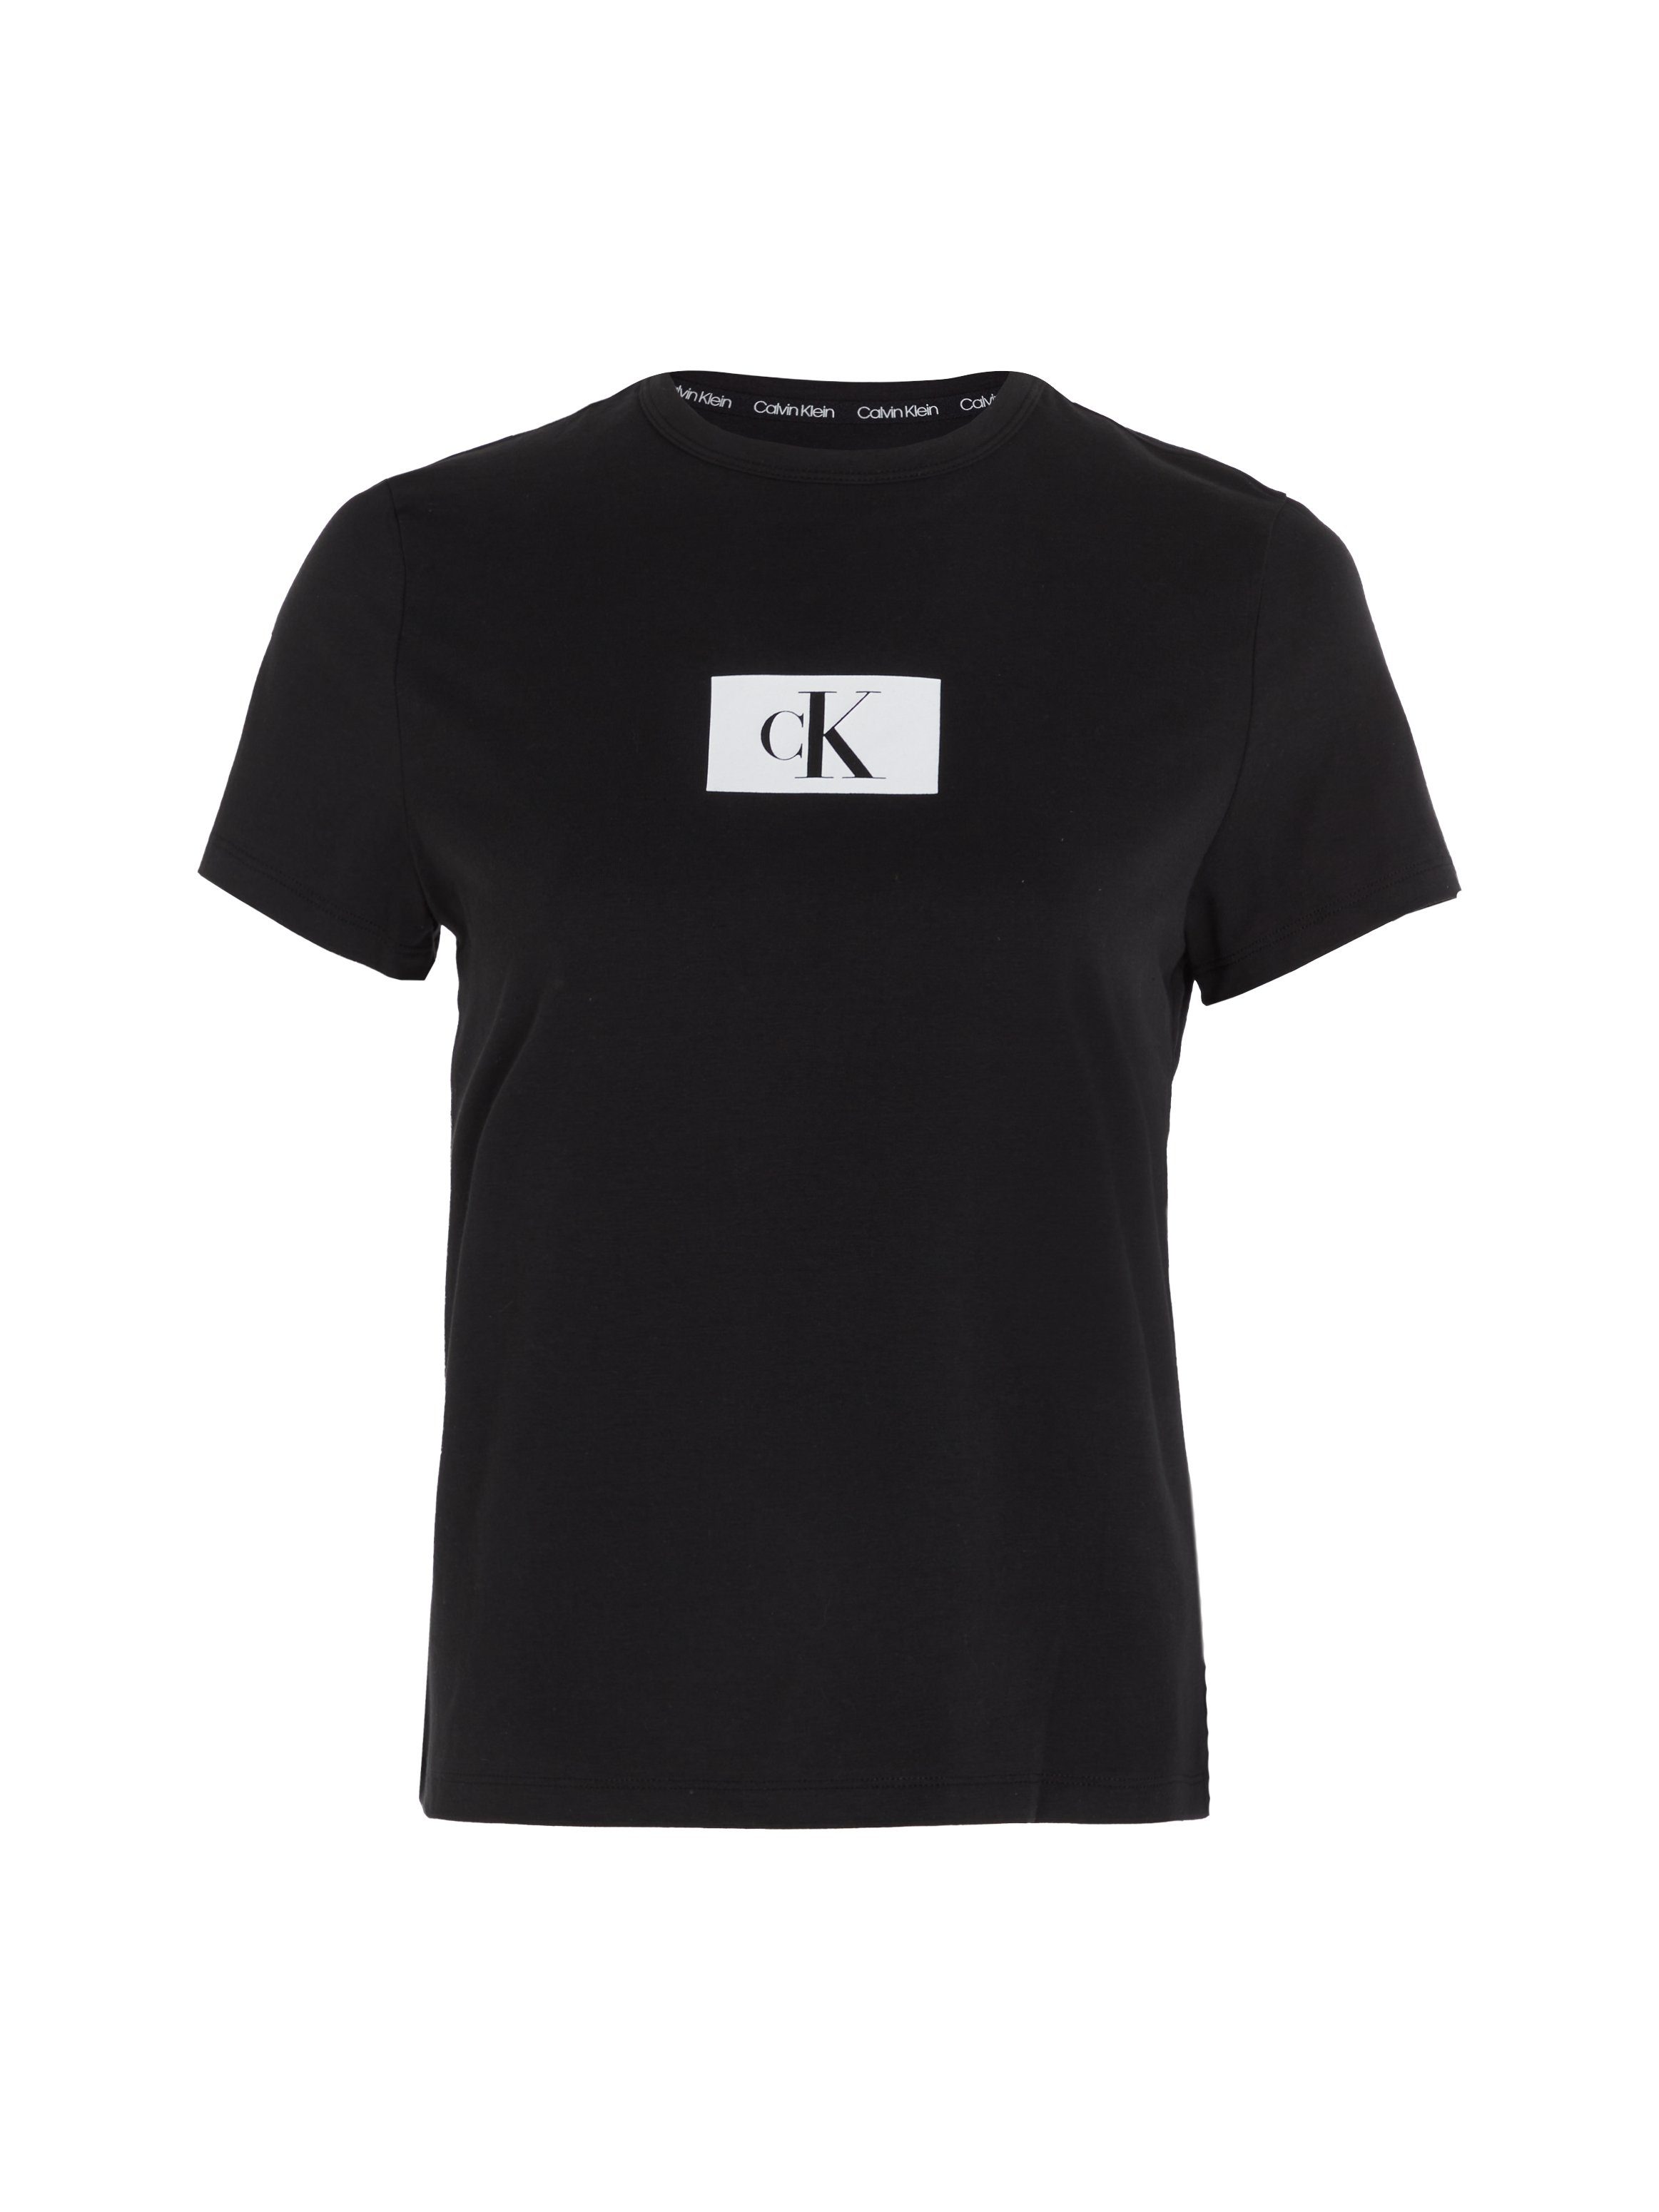 S/S Klein BLACK Kurzarmshirt CREW Underwear NECK Calvin